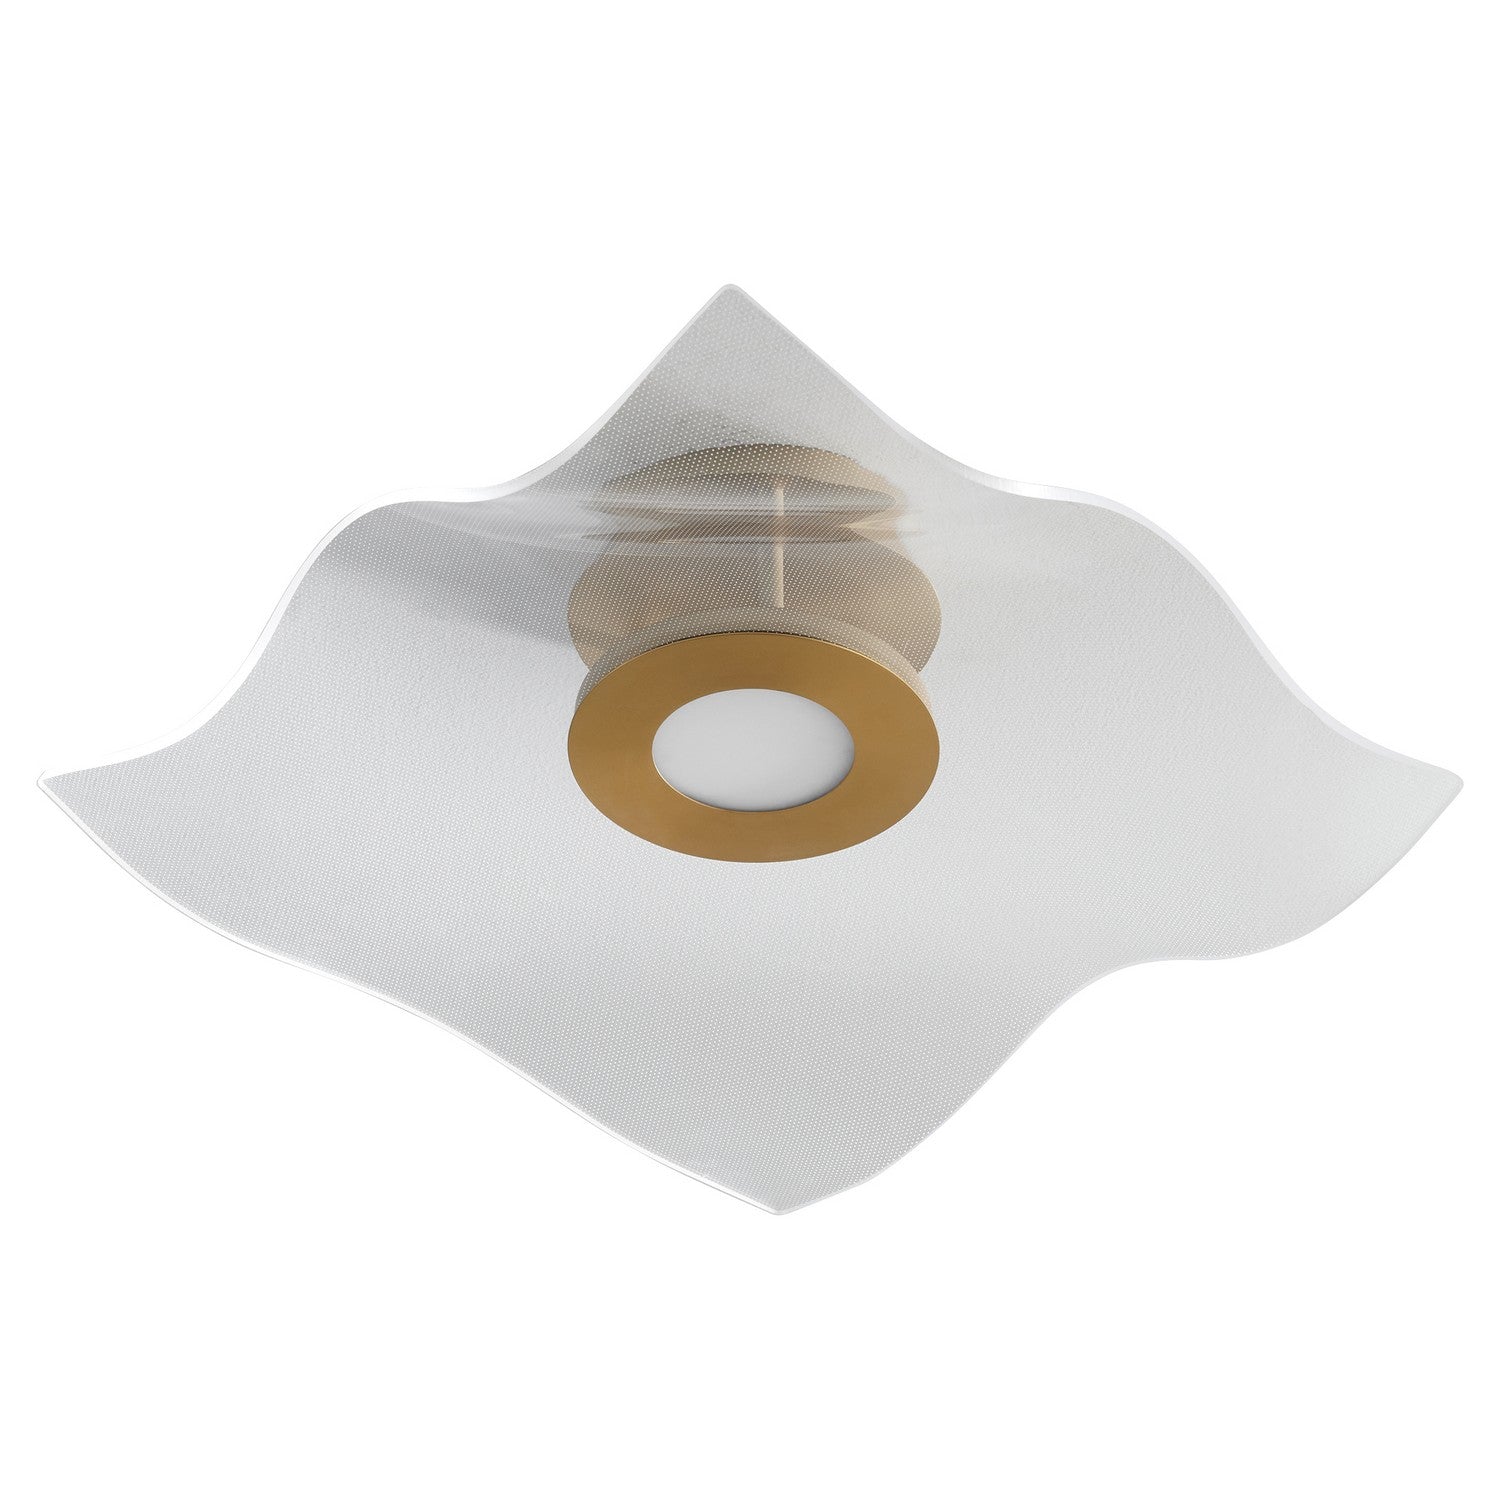 Oxygen Lighting - 3-807-40 - LED Ceiling Mount - Medusa - Aged Brass